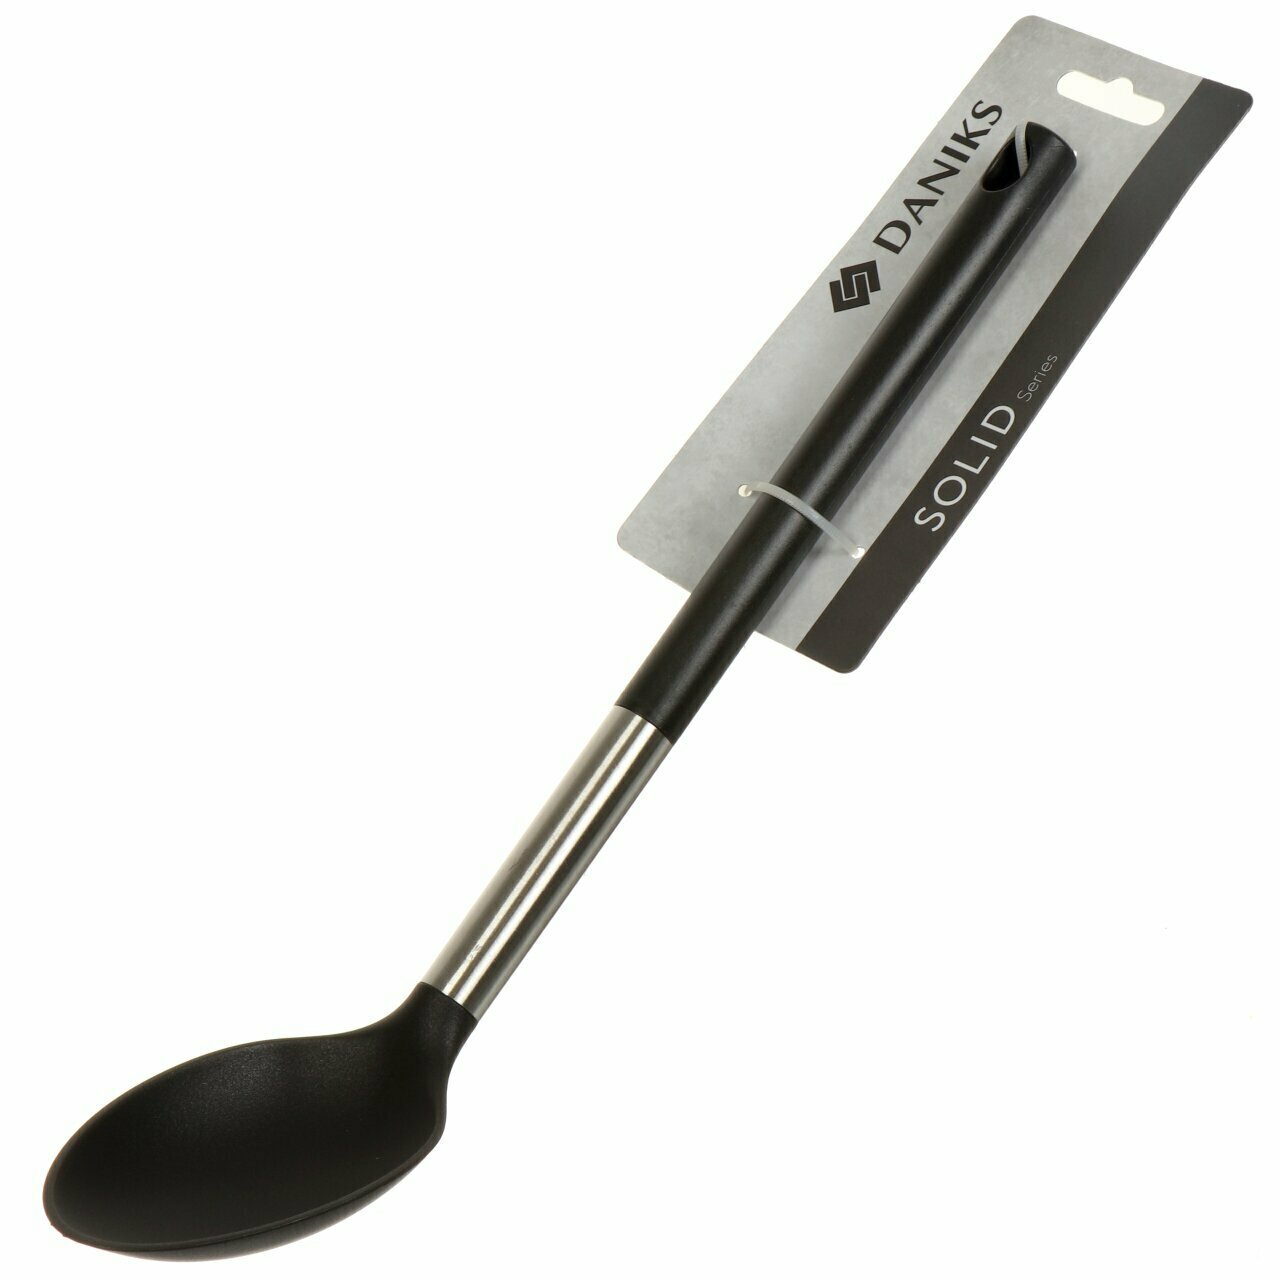 Ложка поварская нейлон, пластиковая ручка, навеска, черная, Daniks, Солид, JA20200420-6